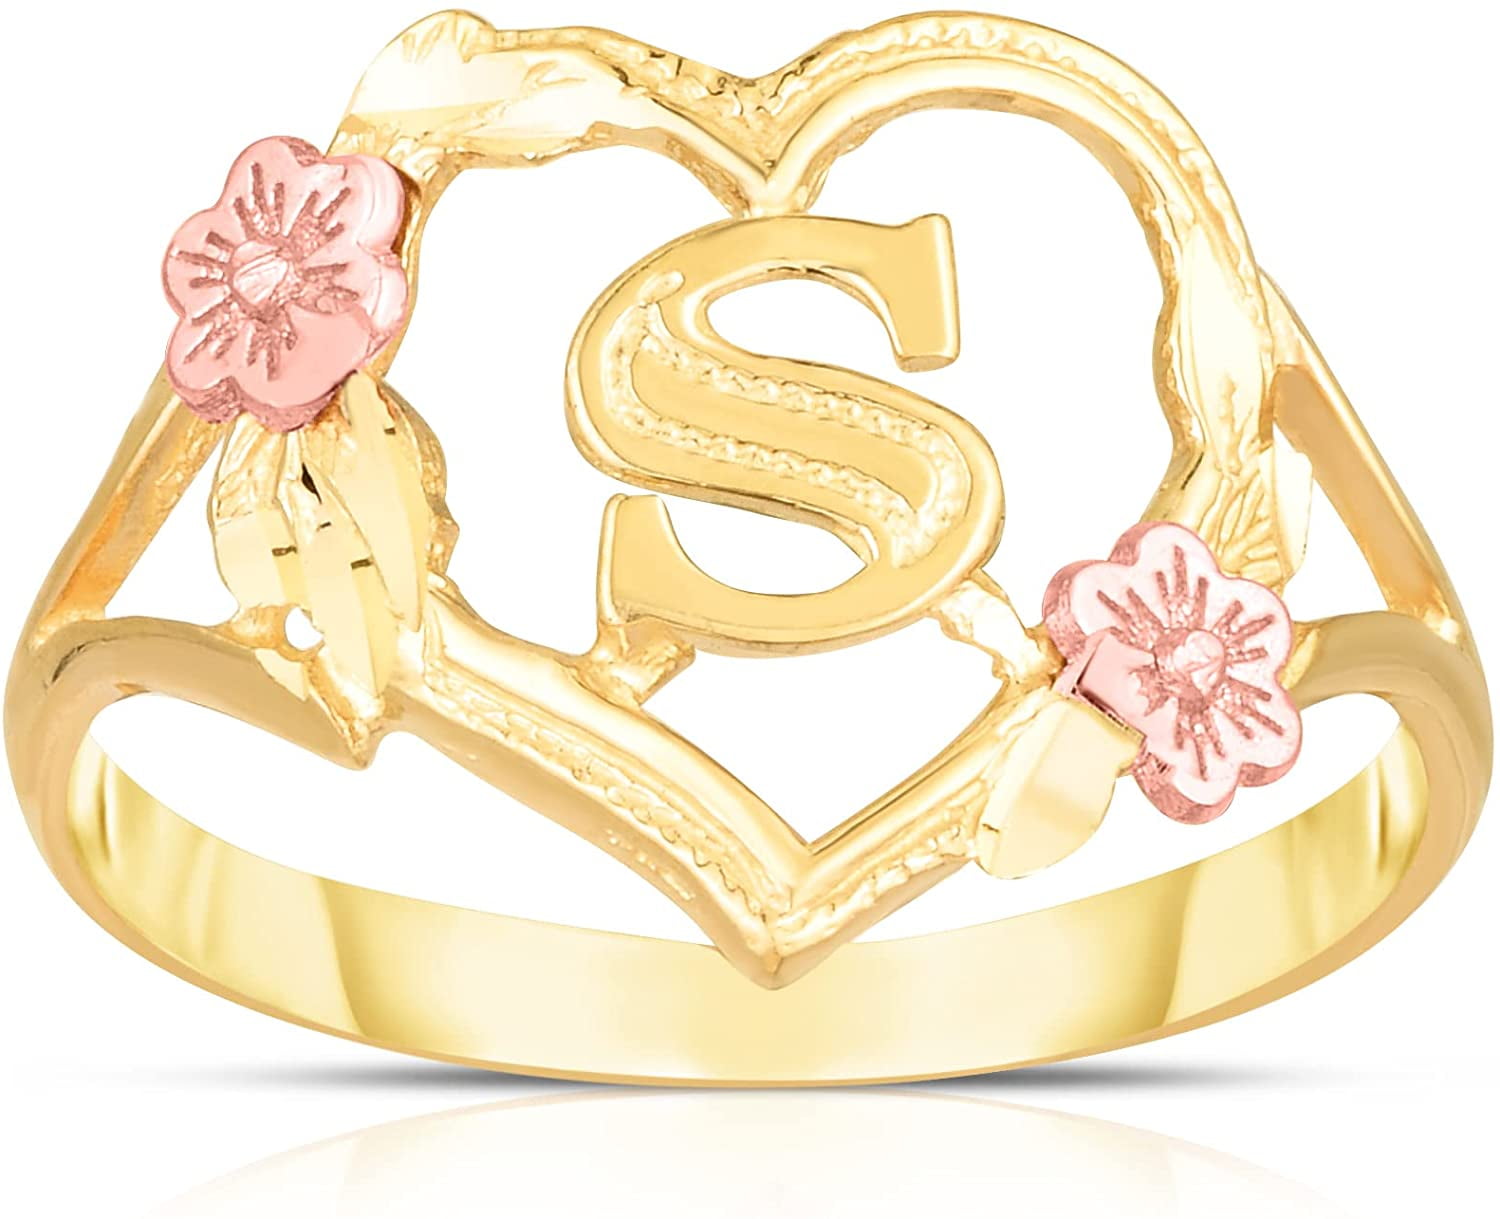 Buy Designer Lotus Flower Ring for Girl for Women Online at Silvermerc |  SBR9I_09 – Silvermerc Designs